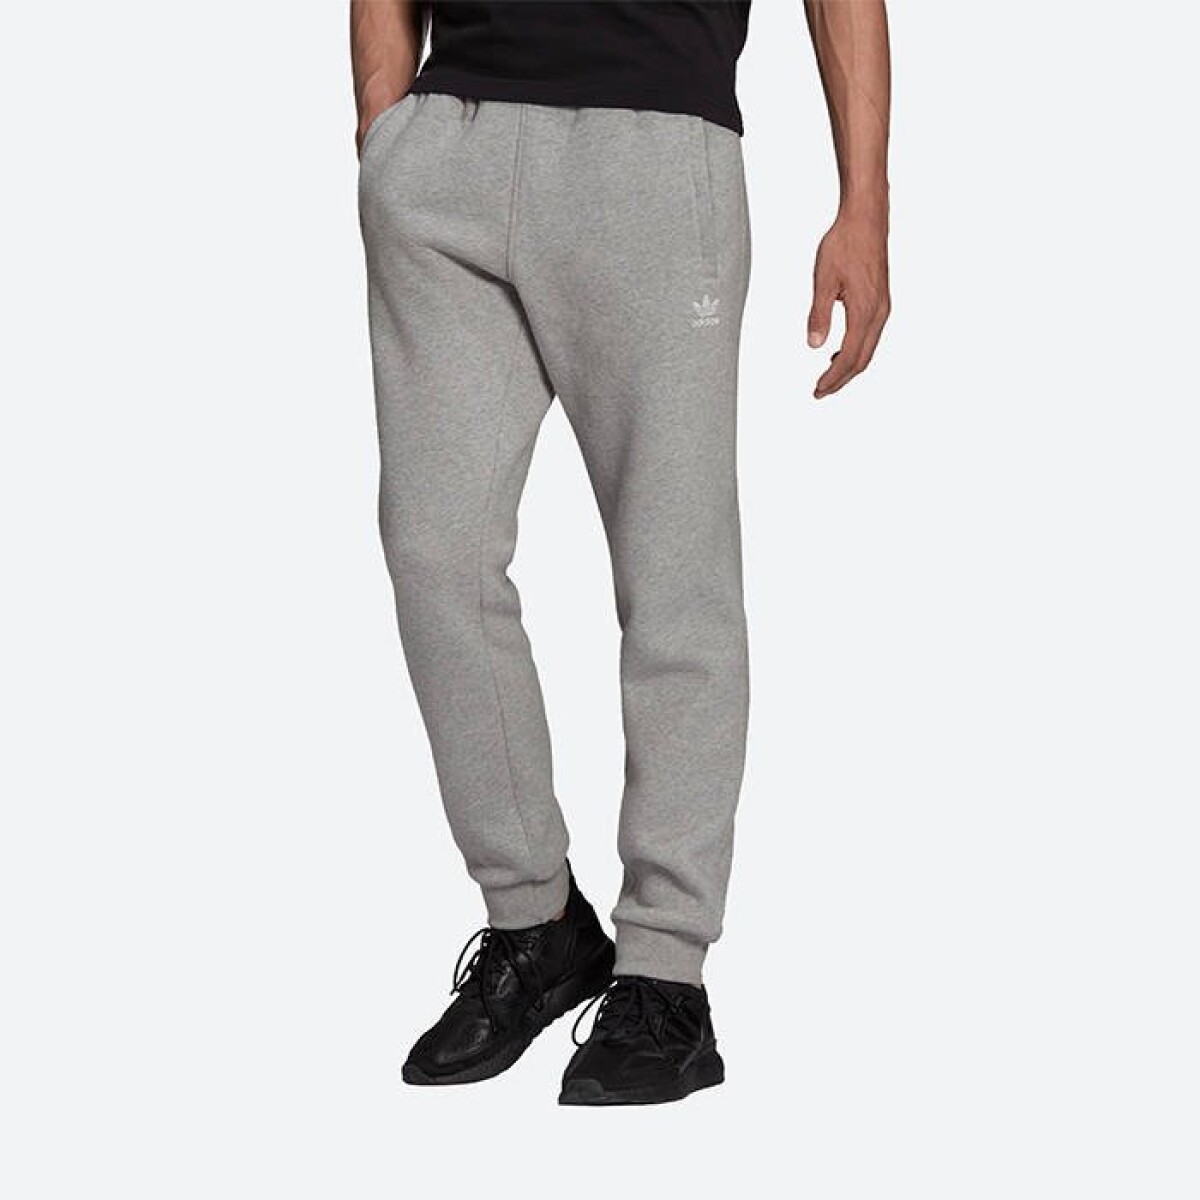 Pantalon Adidas ModA Hombre Essentials - S/C 